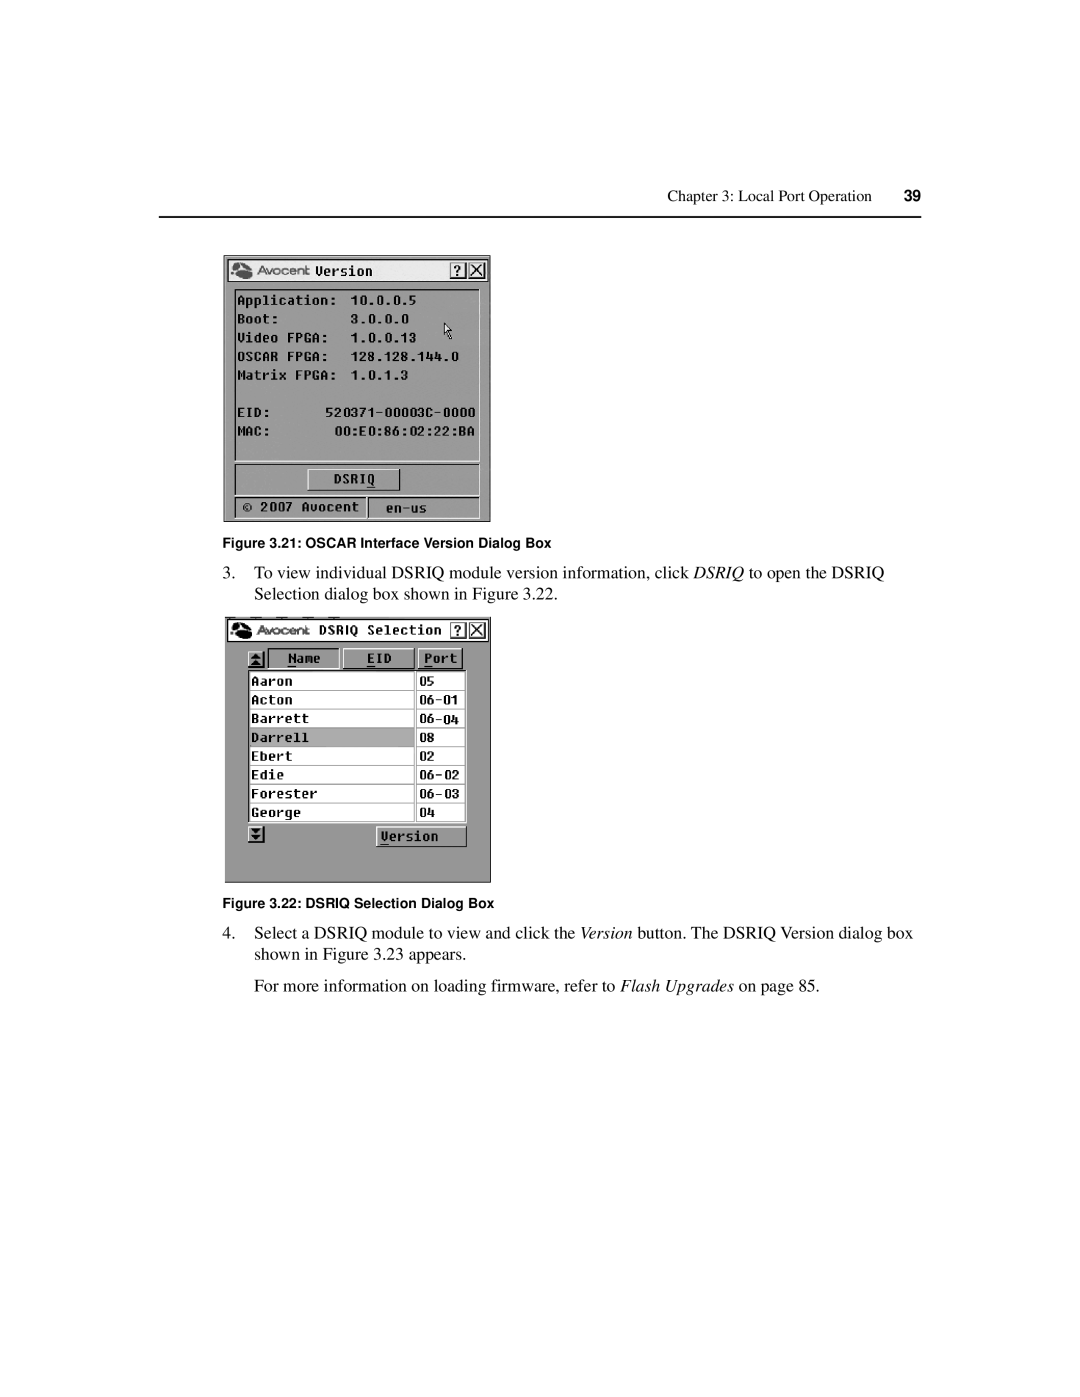 Avocent 590-686-501D manual Oscar Interface Version Dialog Box 